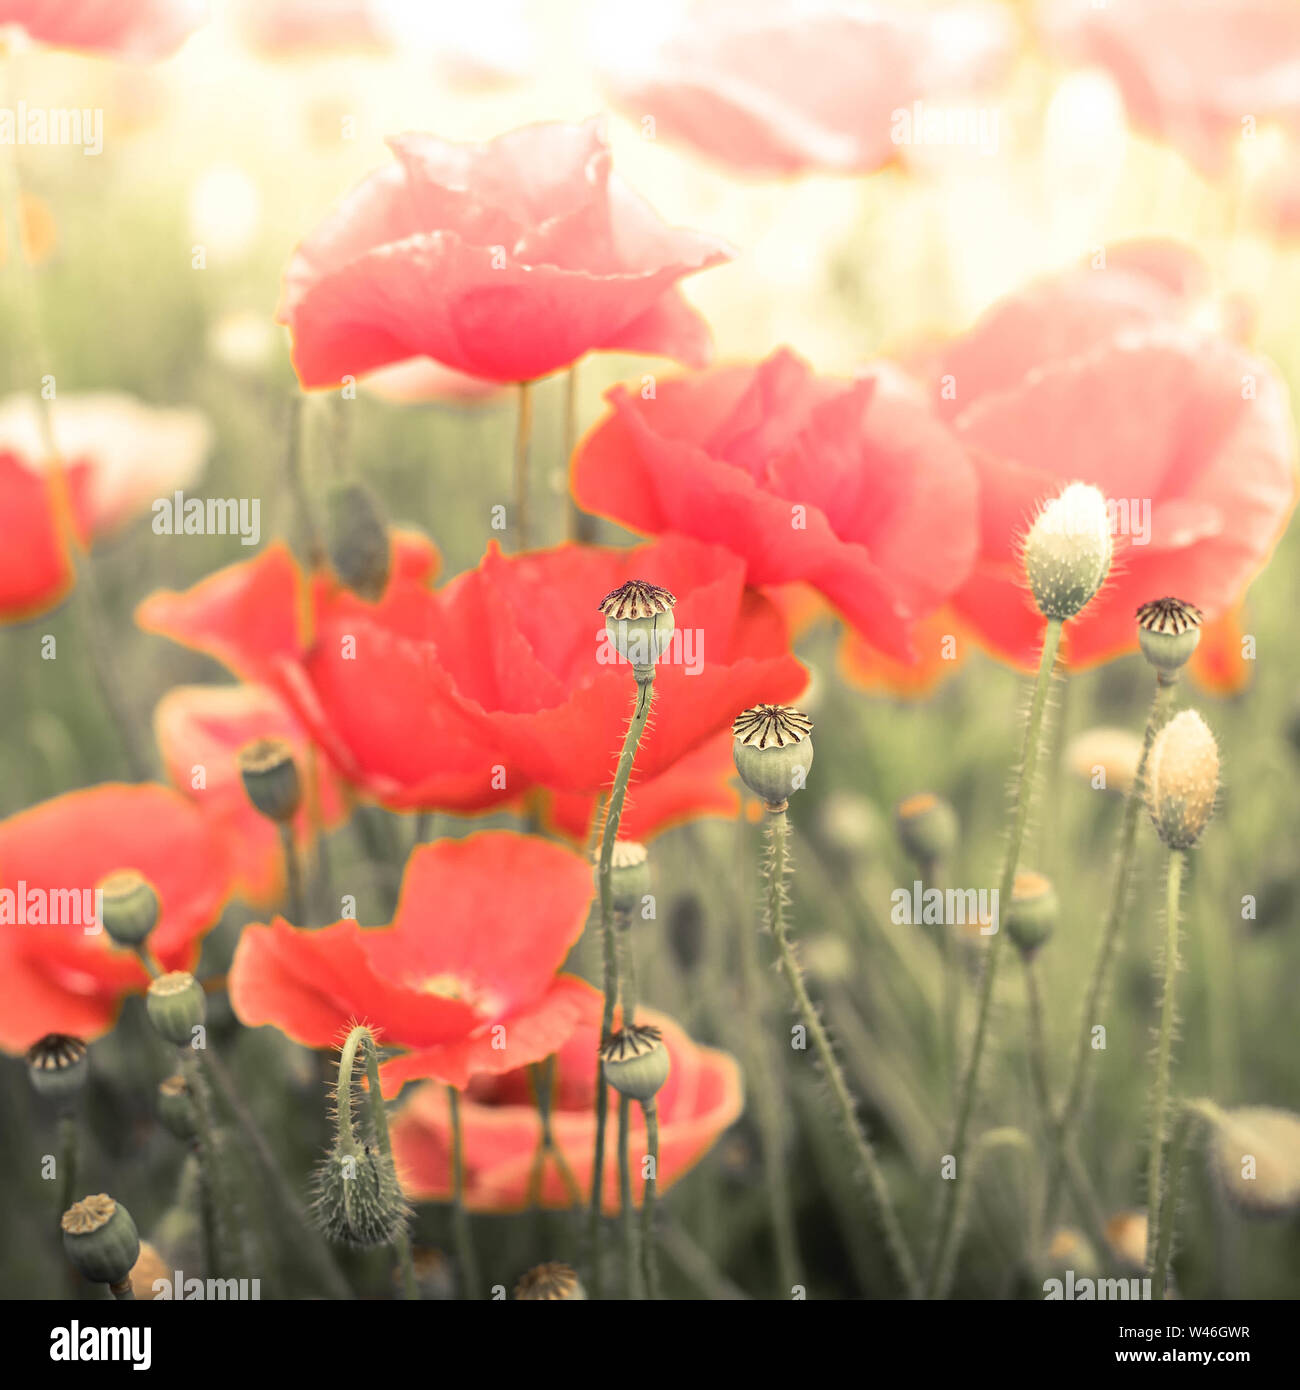 Abstract floral background dans le style vintage avec soft focus sélectif. Fleurs de pavot sauvage d'été sur le pré. Effet aquarelle Banque D'Images